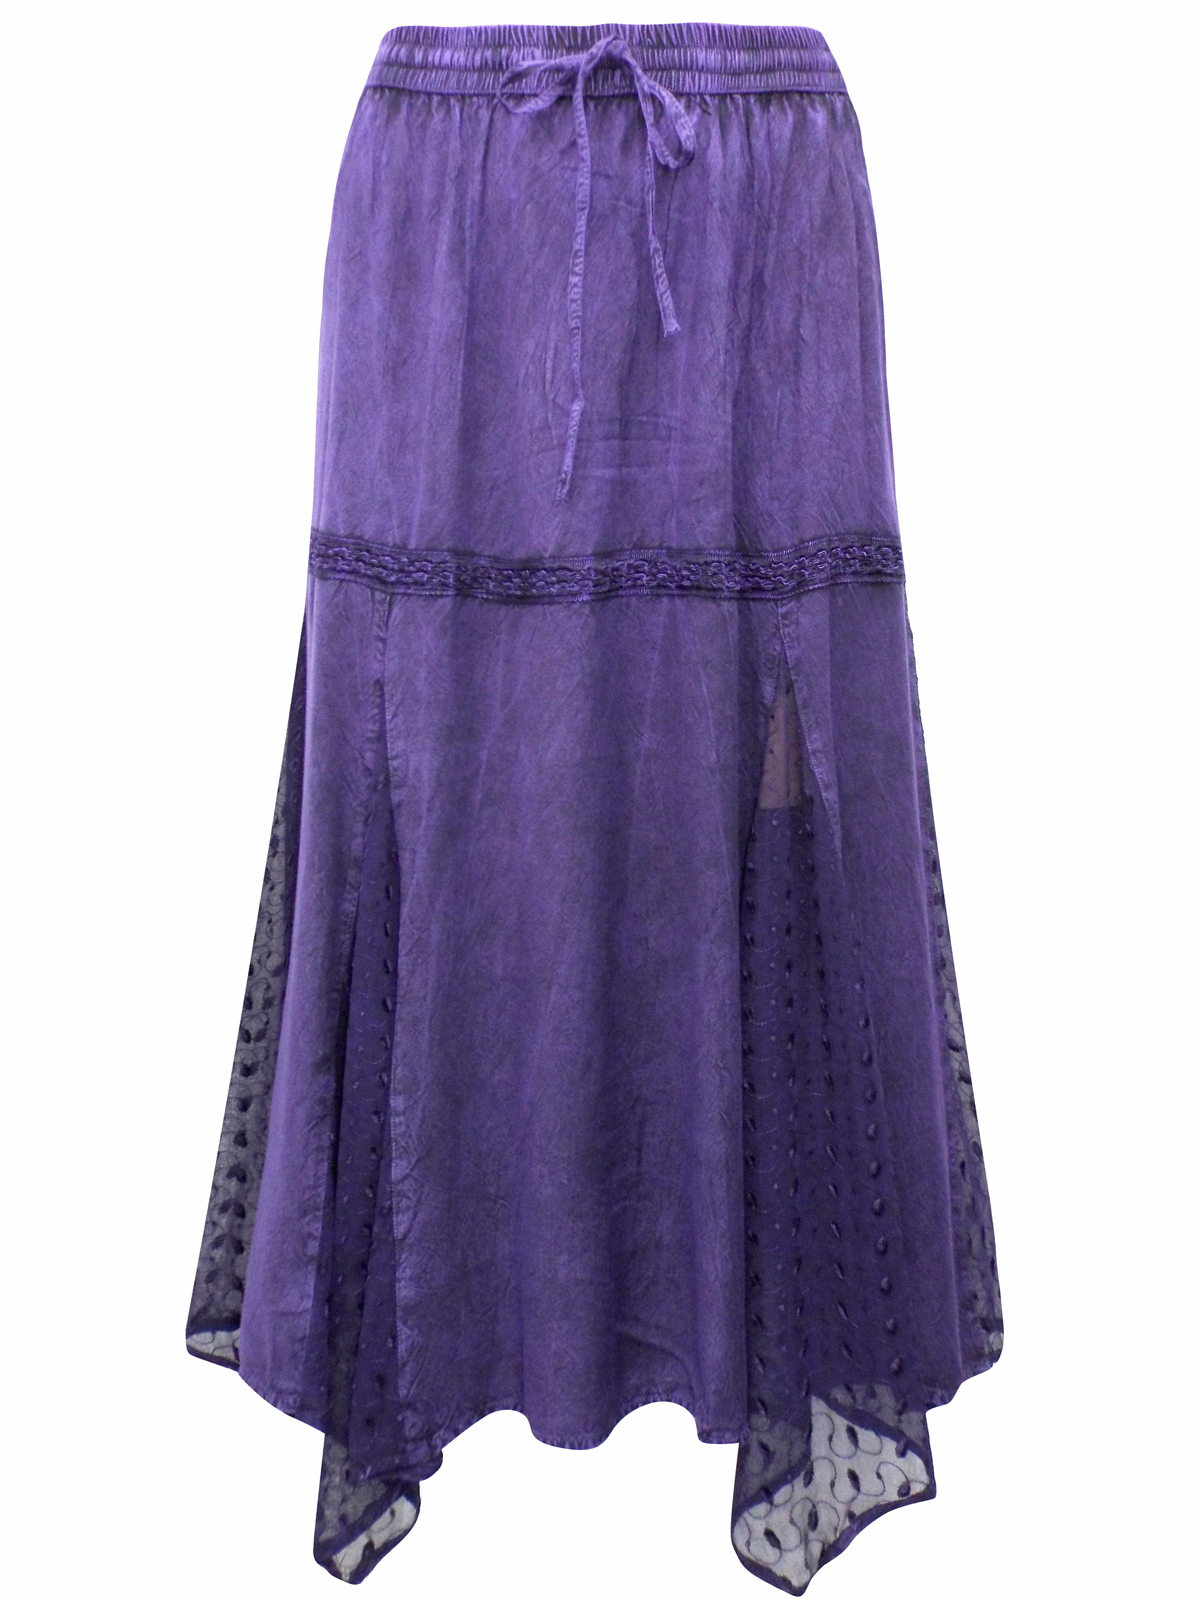 eaonplus PURPLE Dippy Lace Renaissance Capulet Ribbon Trim Skirt - Plus ...